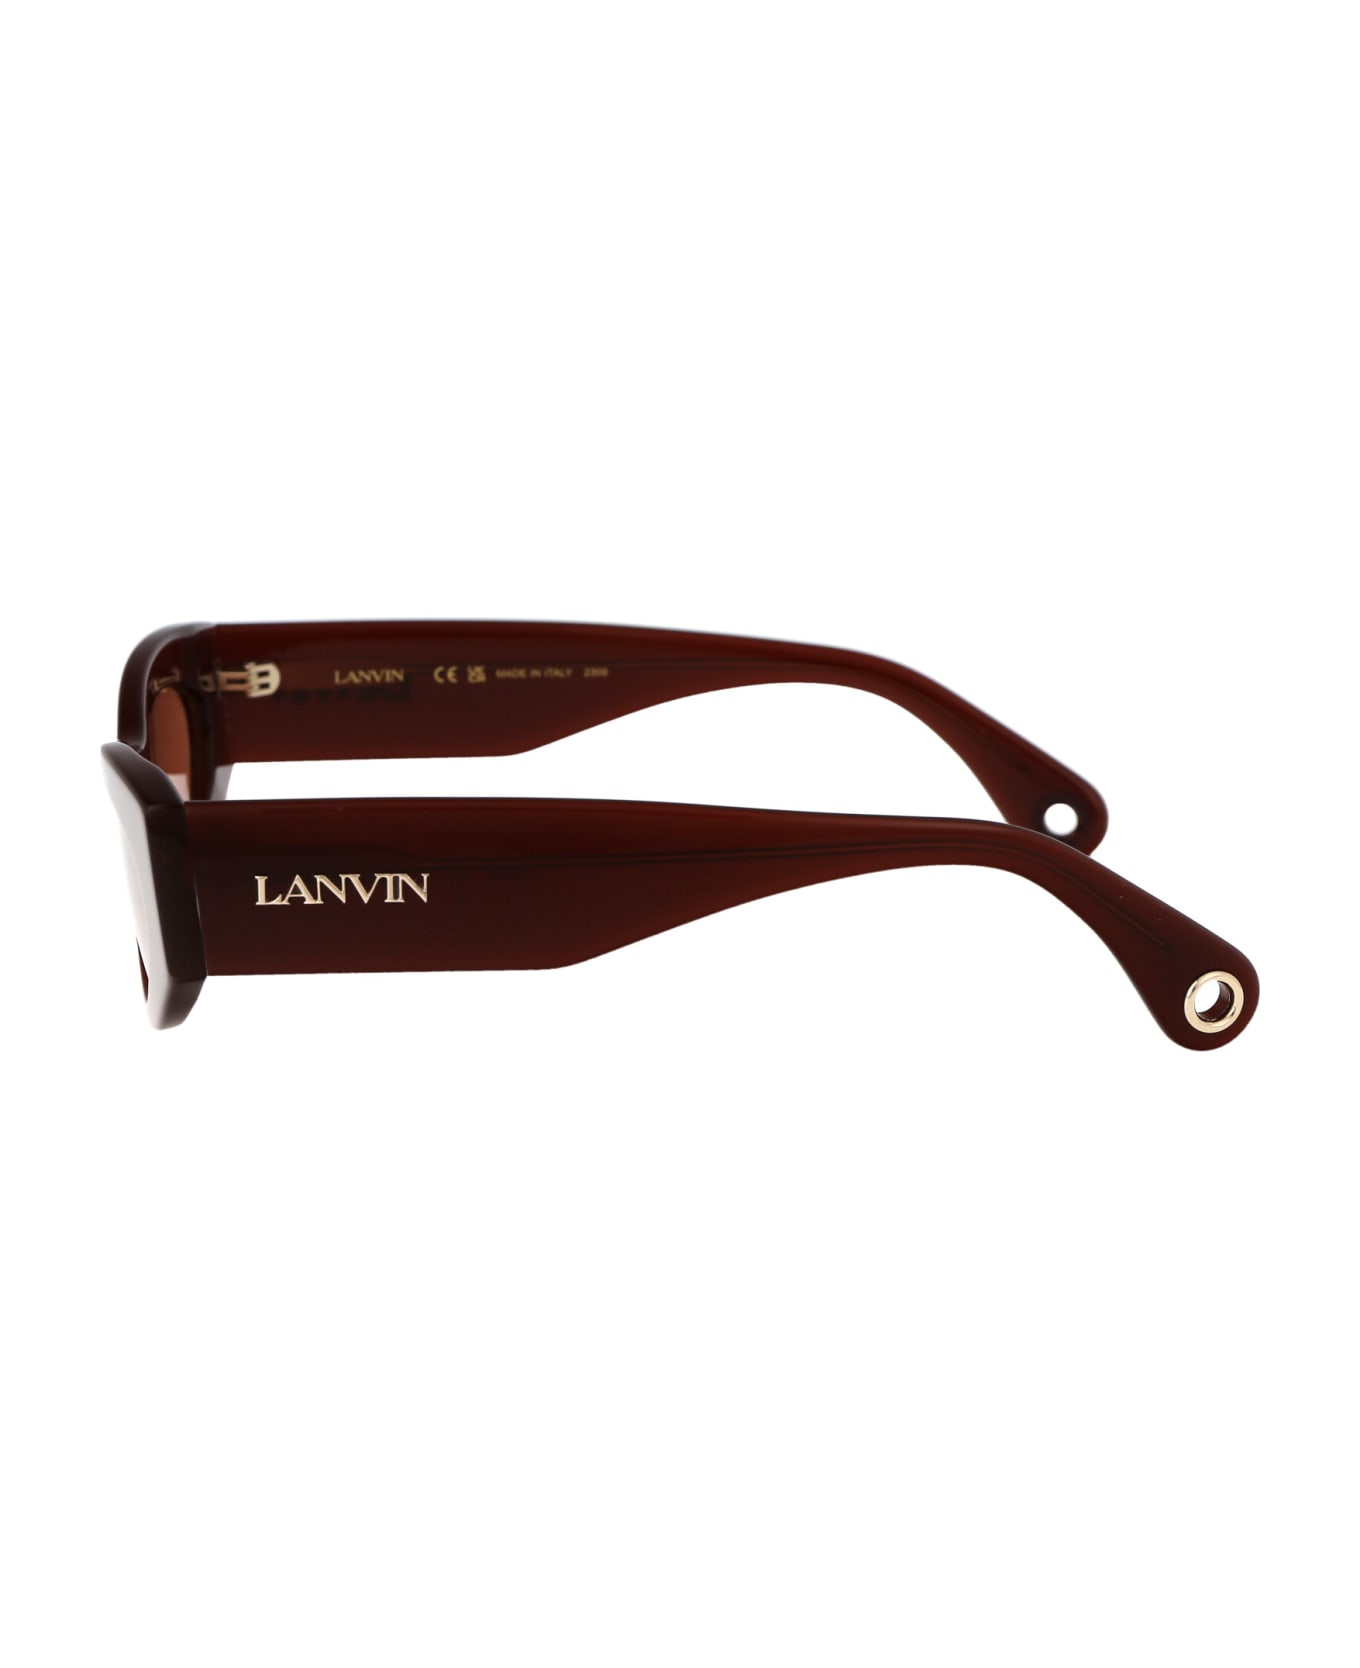 Lanvin Lnv669s Sunglasses - 235 RED サングラス